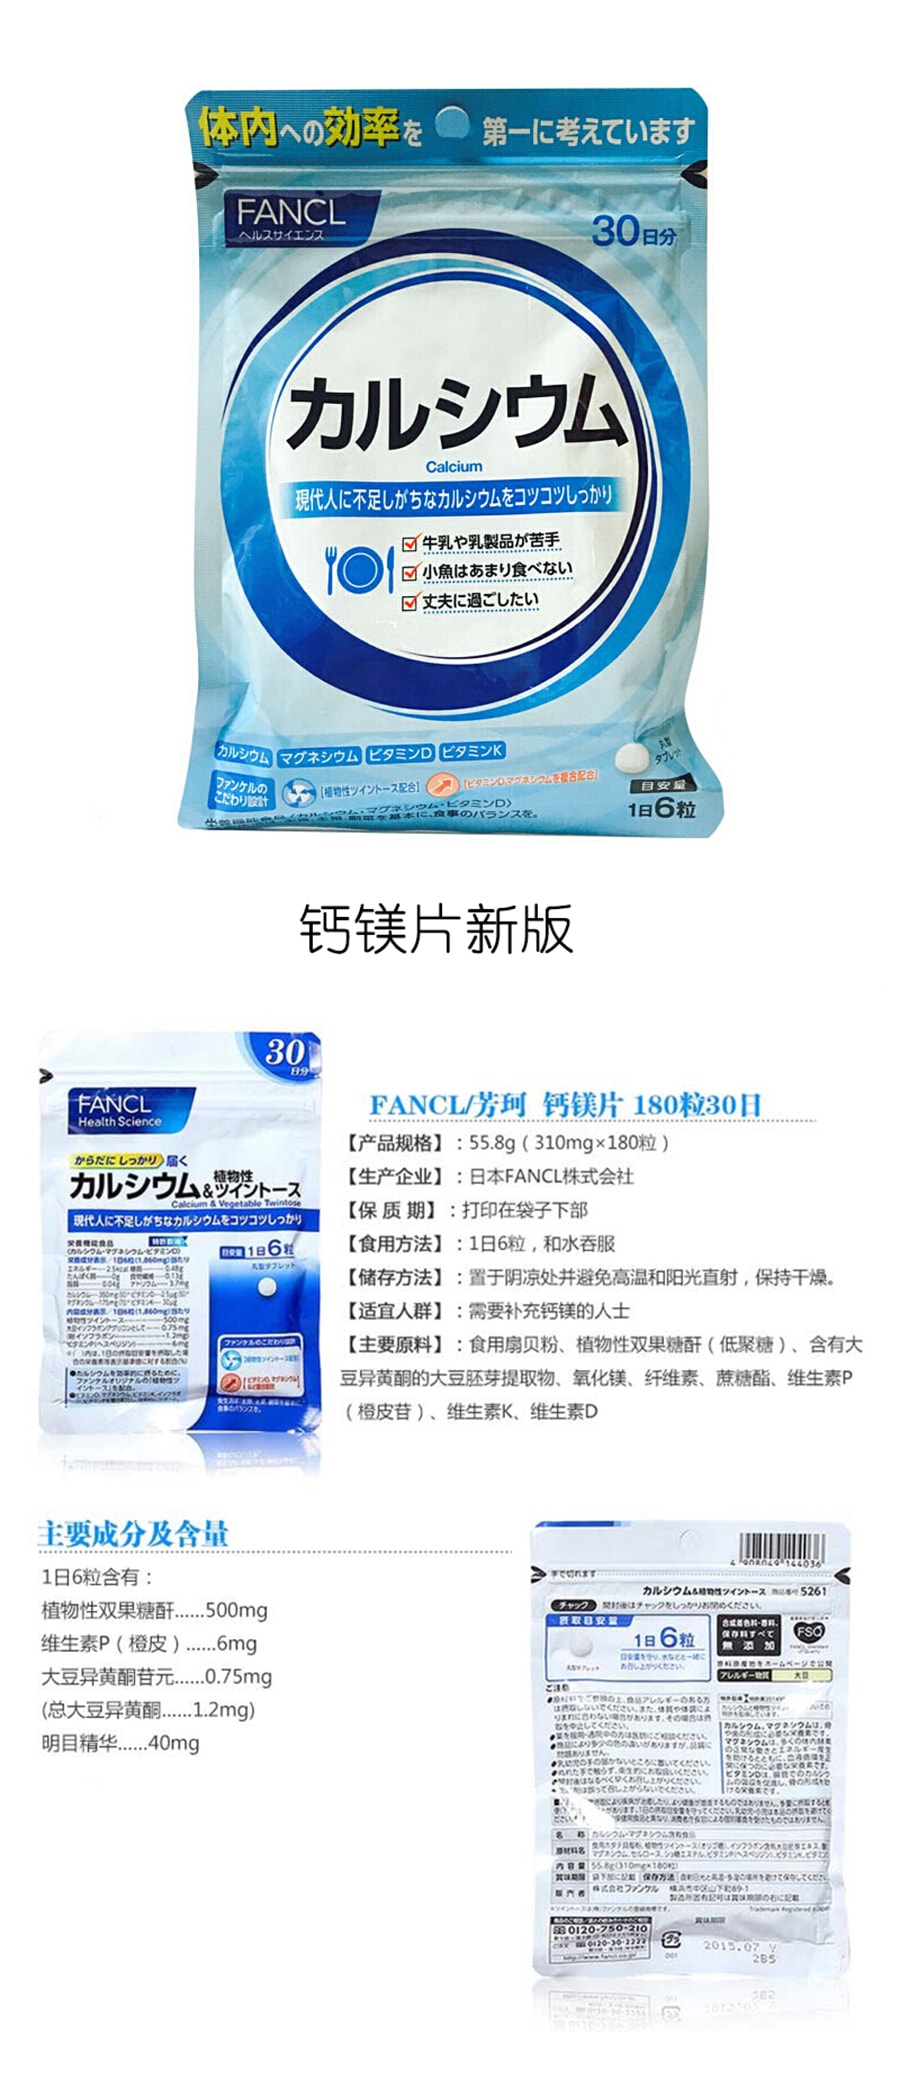 【日本直效郵件 】FANCL無添加芳珂 內脂支援 減少體內脂健康塑型 90粒30日